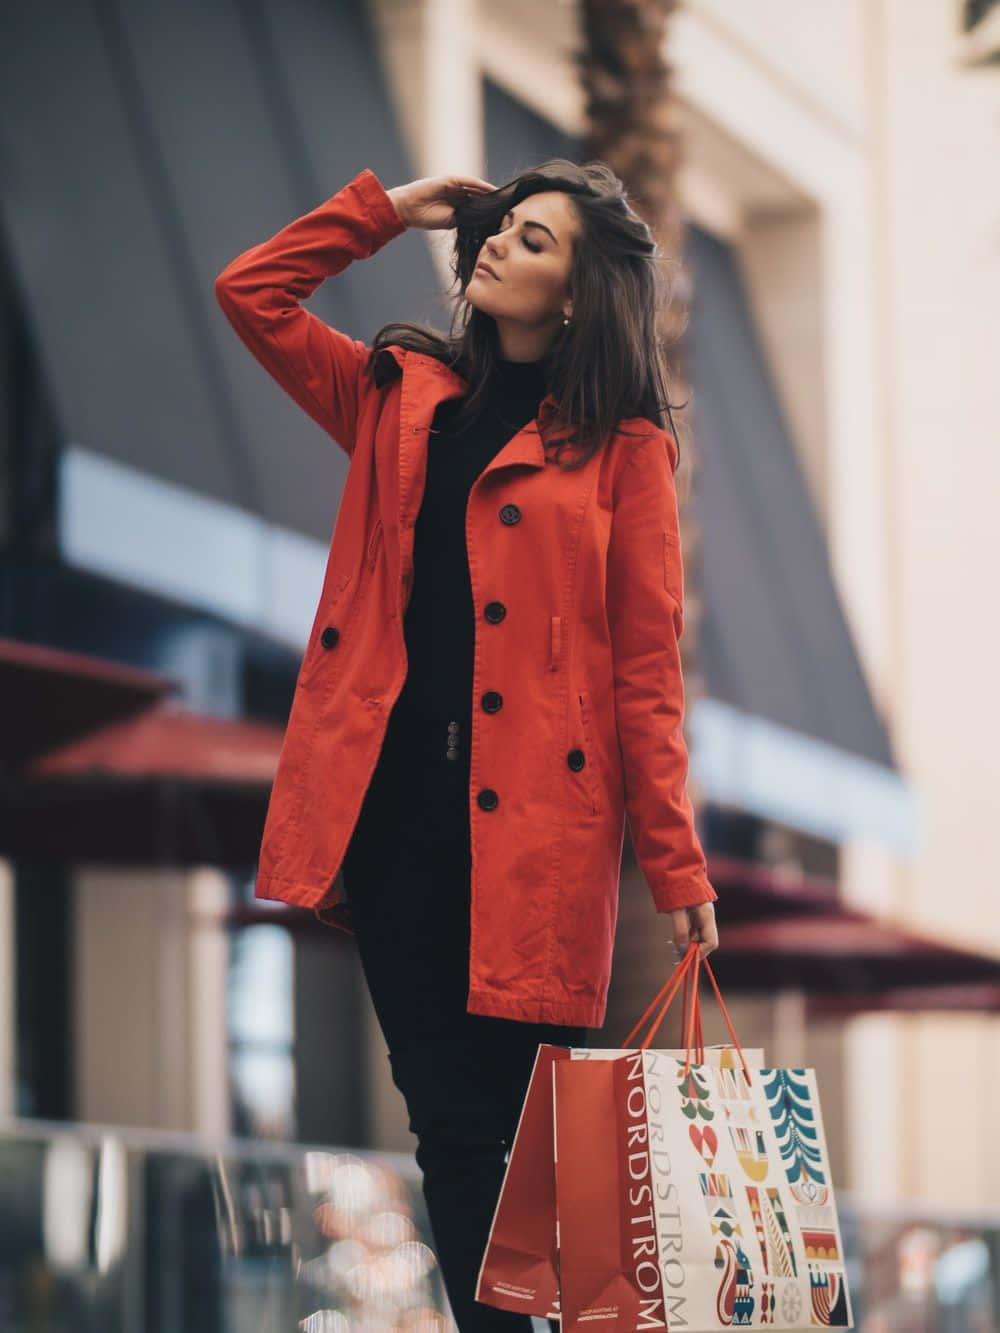 Enkvinna I En Röd Kappa Som Håller I Shoppingkassar